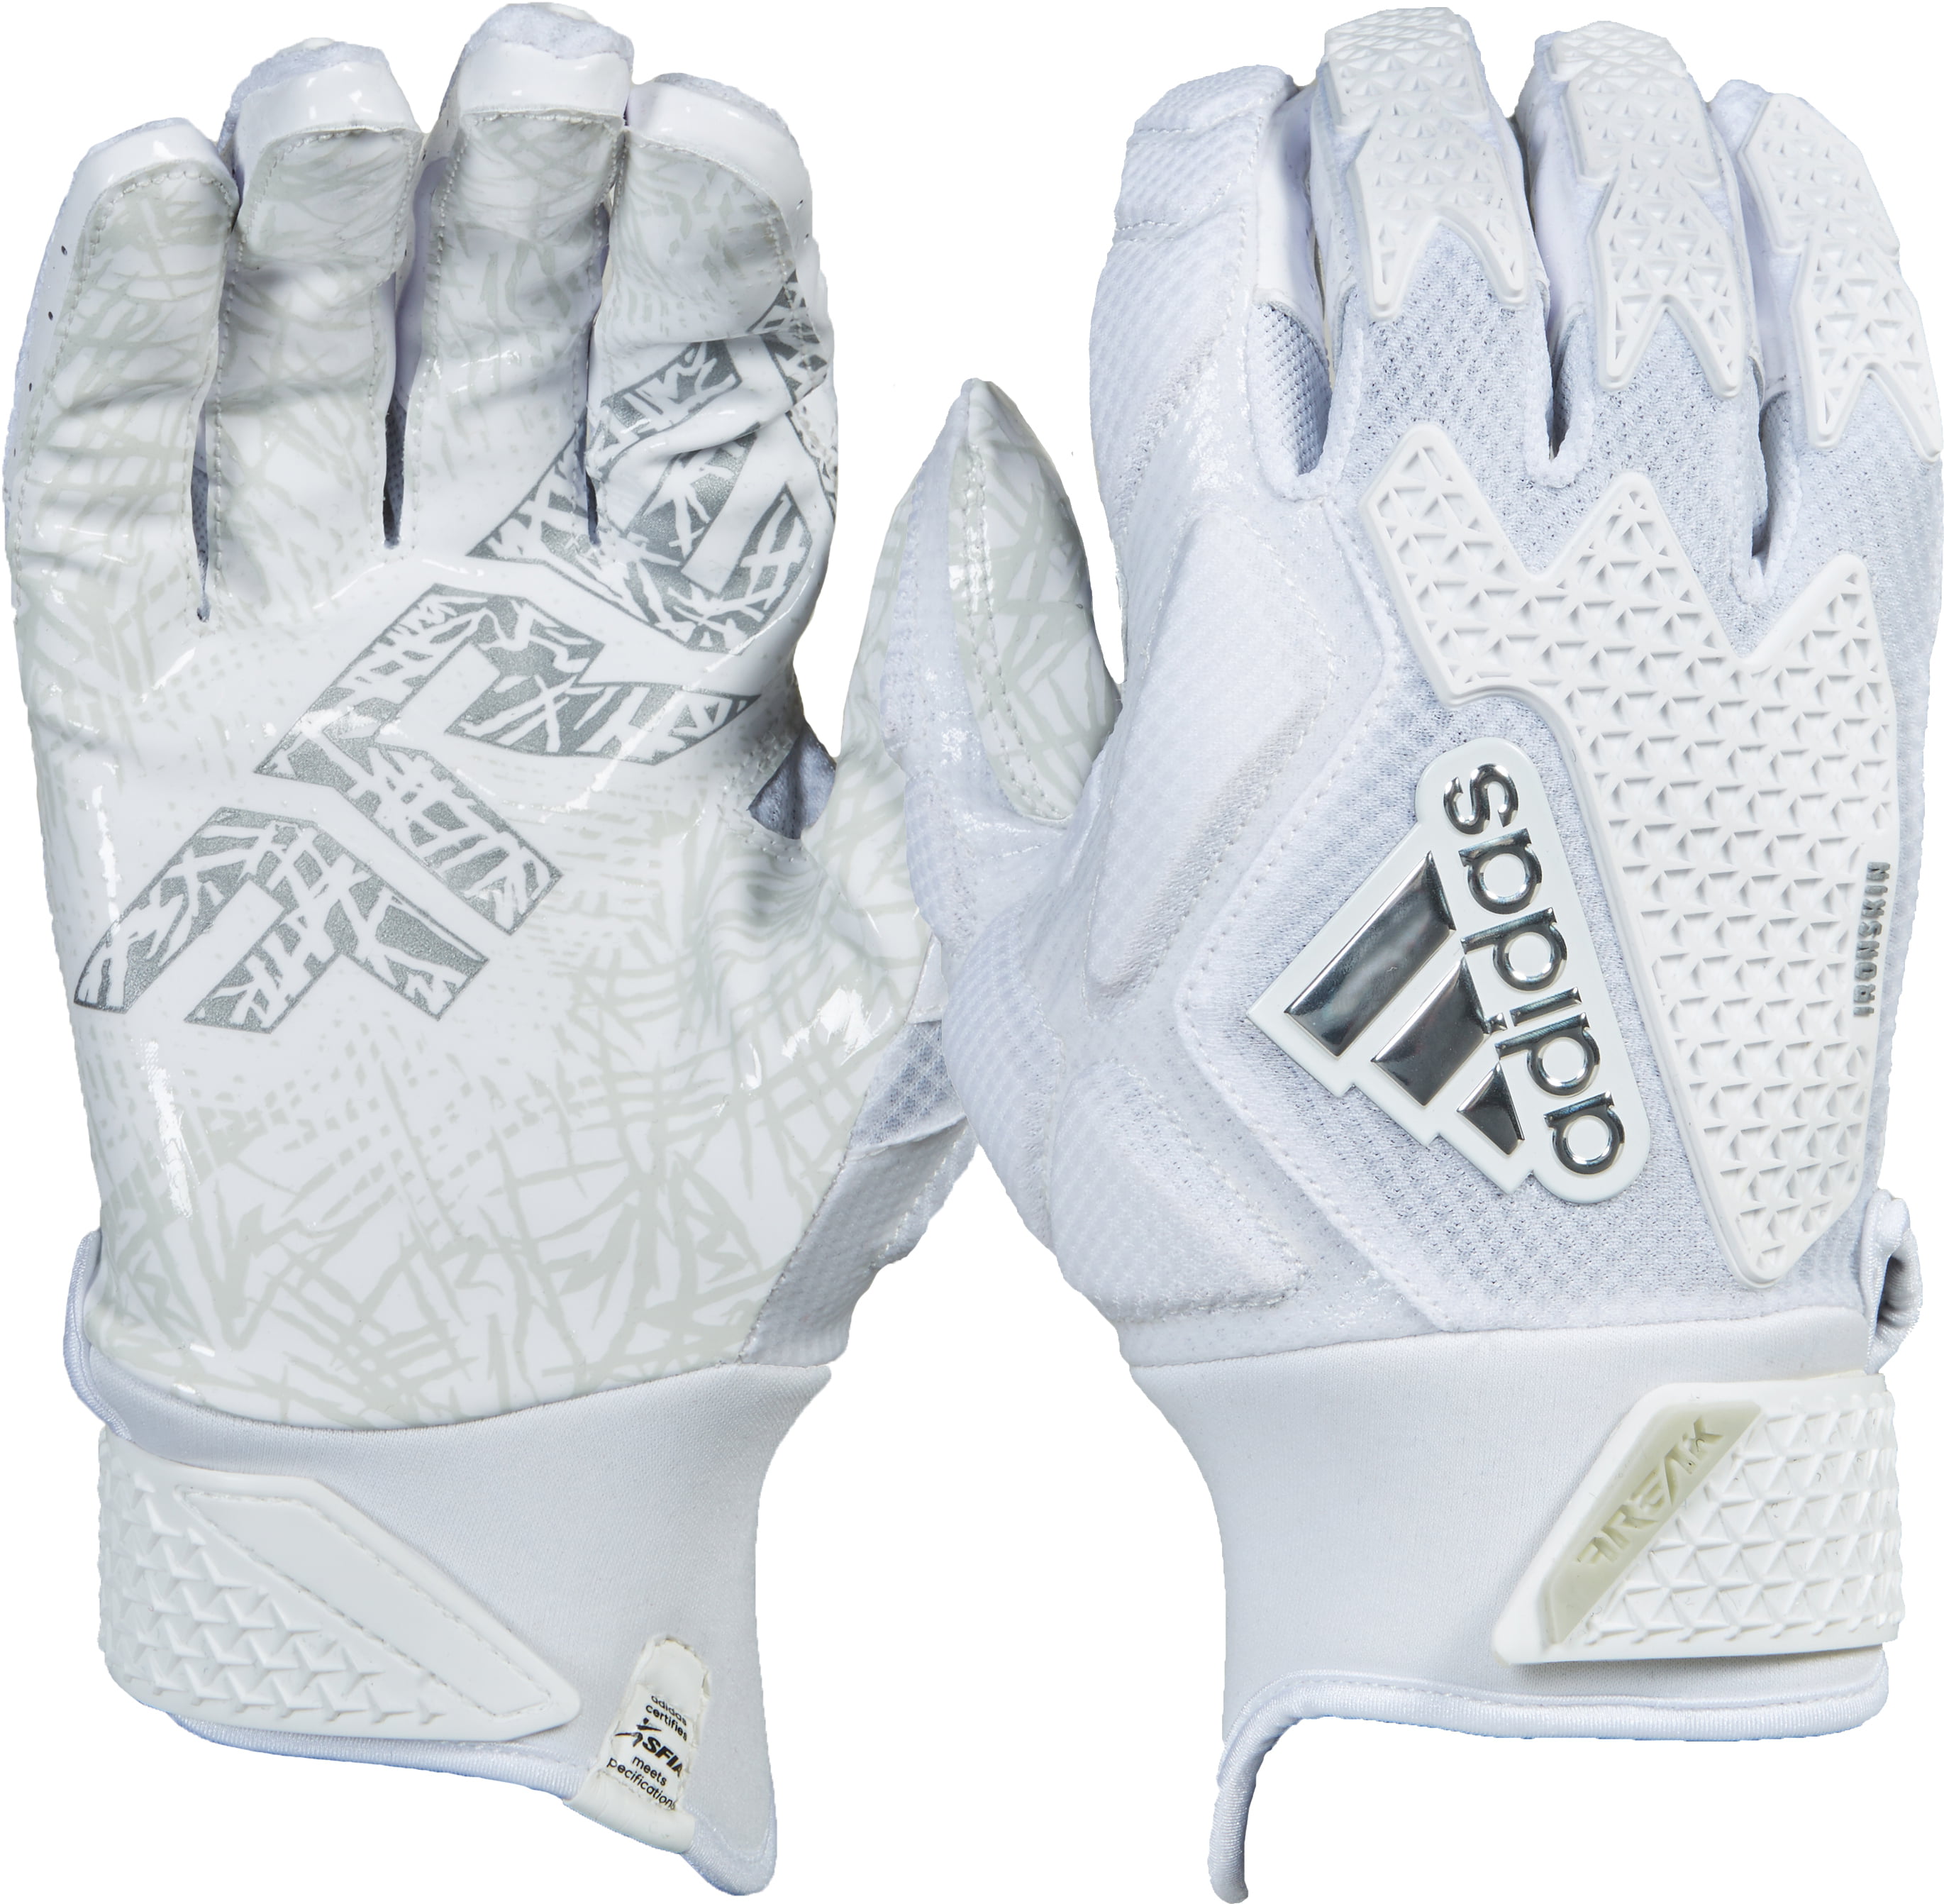 freak 3.0 gloves